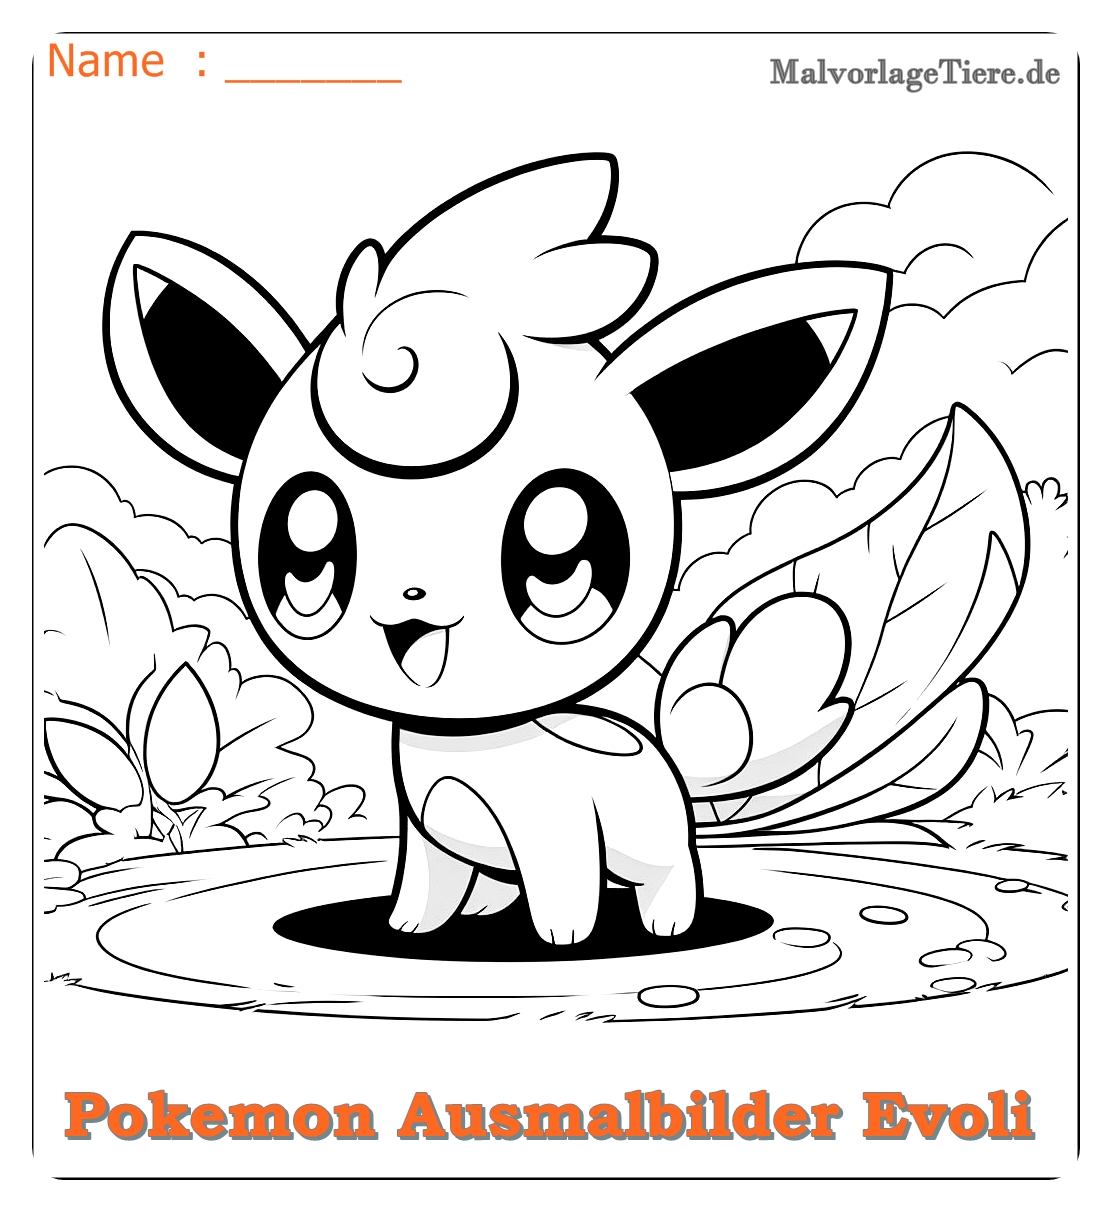 pokemon ausmalbilder evoli entwicklungen 09 by malvorlagetiere.de